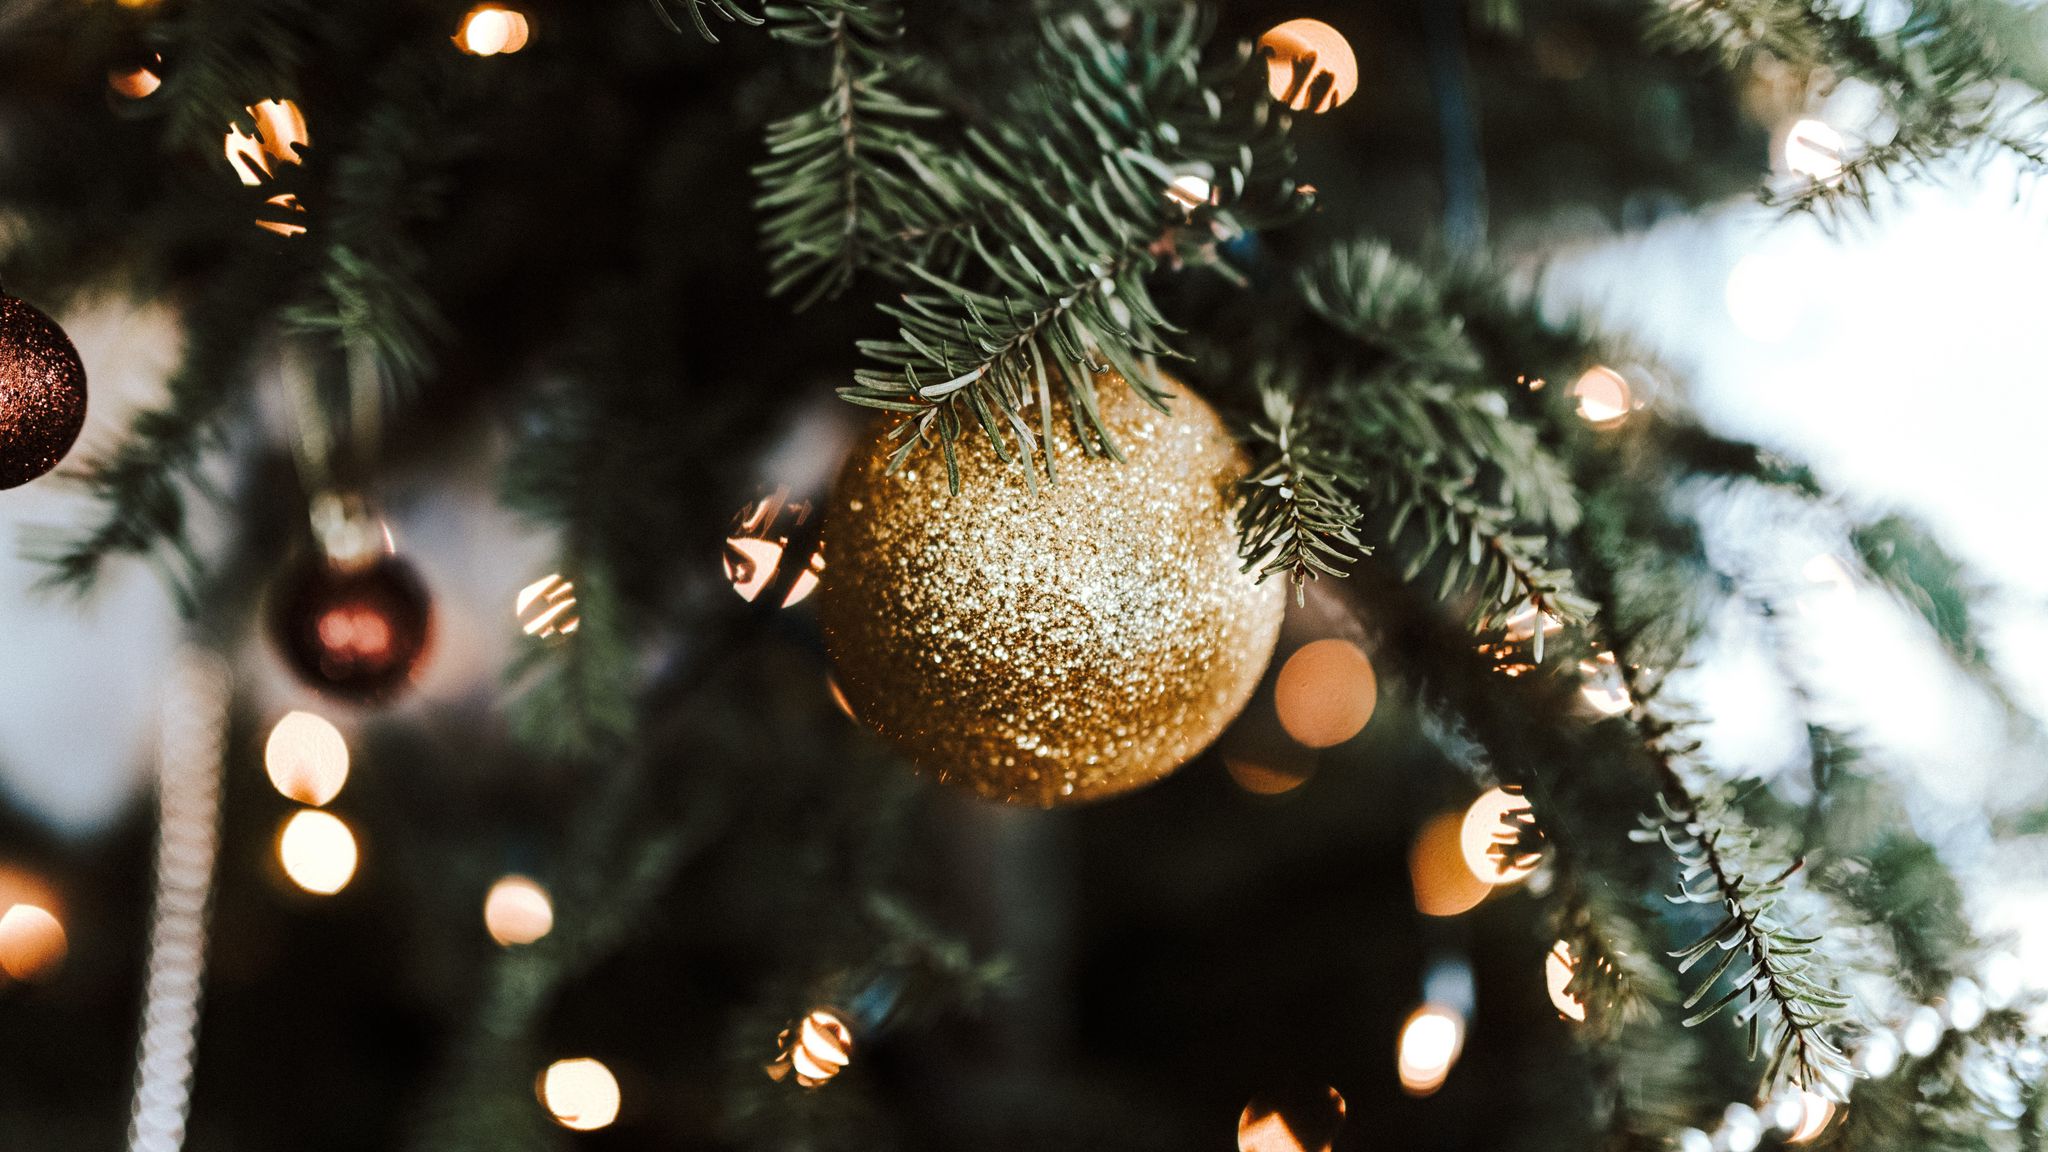 Mùa Giáng Sinh đang đến gần, hãy cùng nhau trang trí cho căn nhà của bạn thật đẹp và lung linh. Những hình ảnh trang trí Giáng Sinh sẽ giúp bạn có nhiều ý tưởng để thực hiện và mang đến không gian ấm áp và đầy vui tươi trong mùa lễ này.